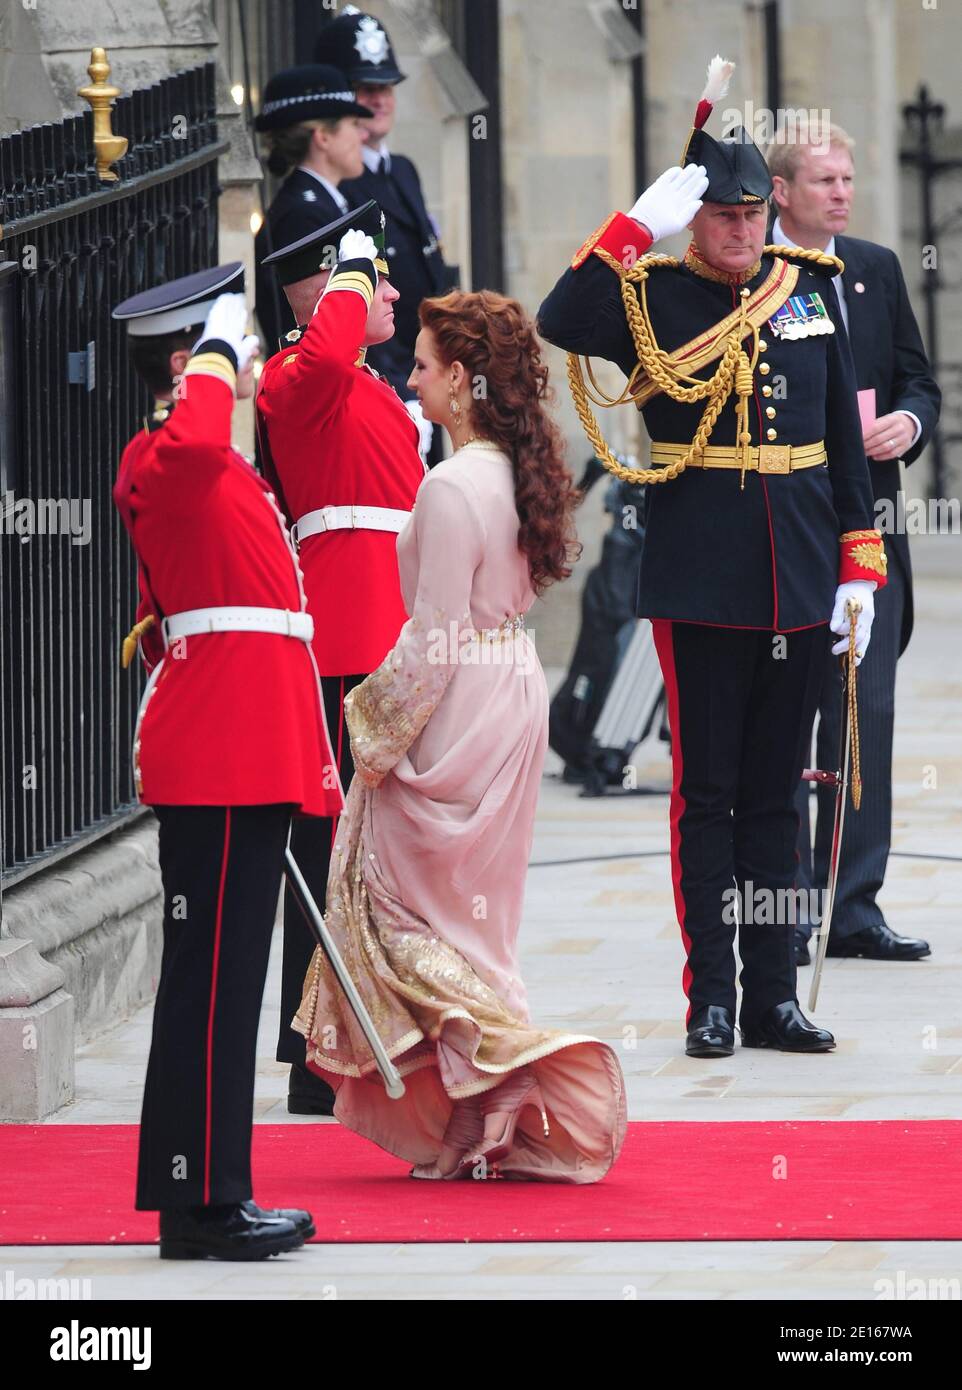 Principessa Lalla Salma del Marocco che arriva all'Abbazia di Westminster per il matrimonio del Principe William con Kate Middleton, a Londra, Regno Unito, il 29 aprile 2011. Foto di Frederic Nebinger/ABACAPRESS.COM Foto Stock